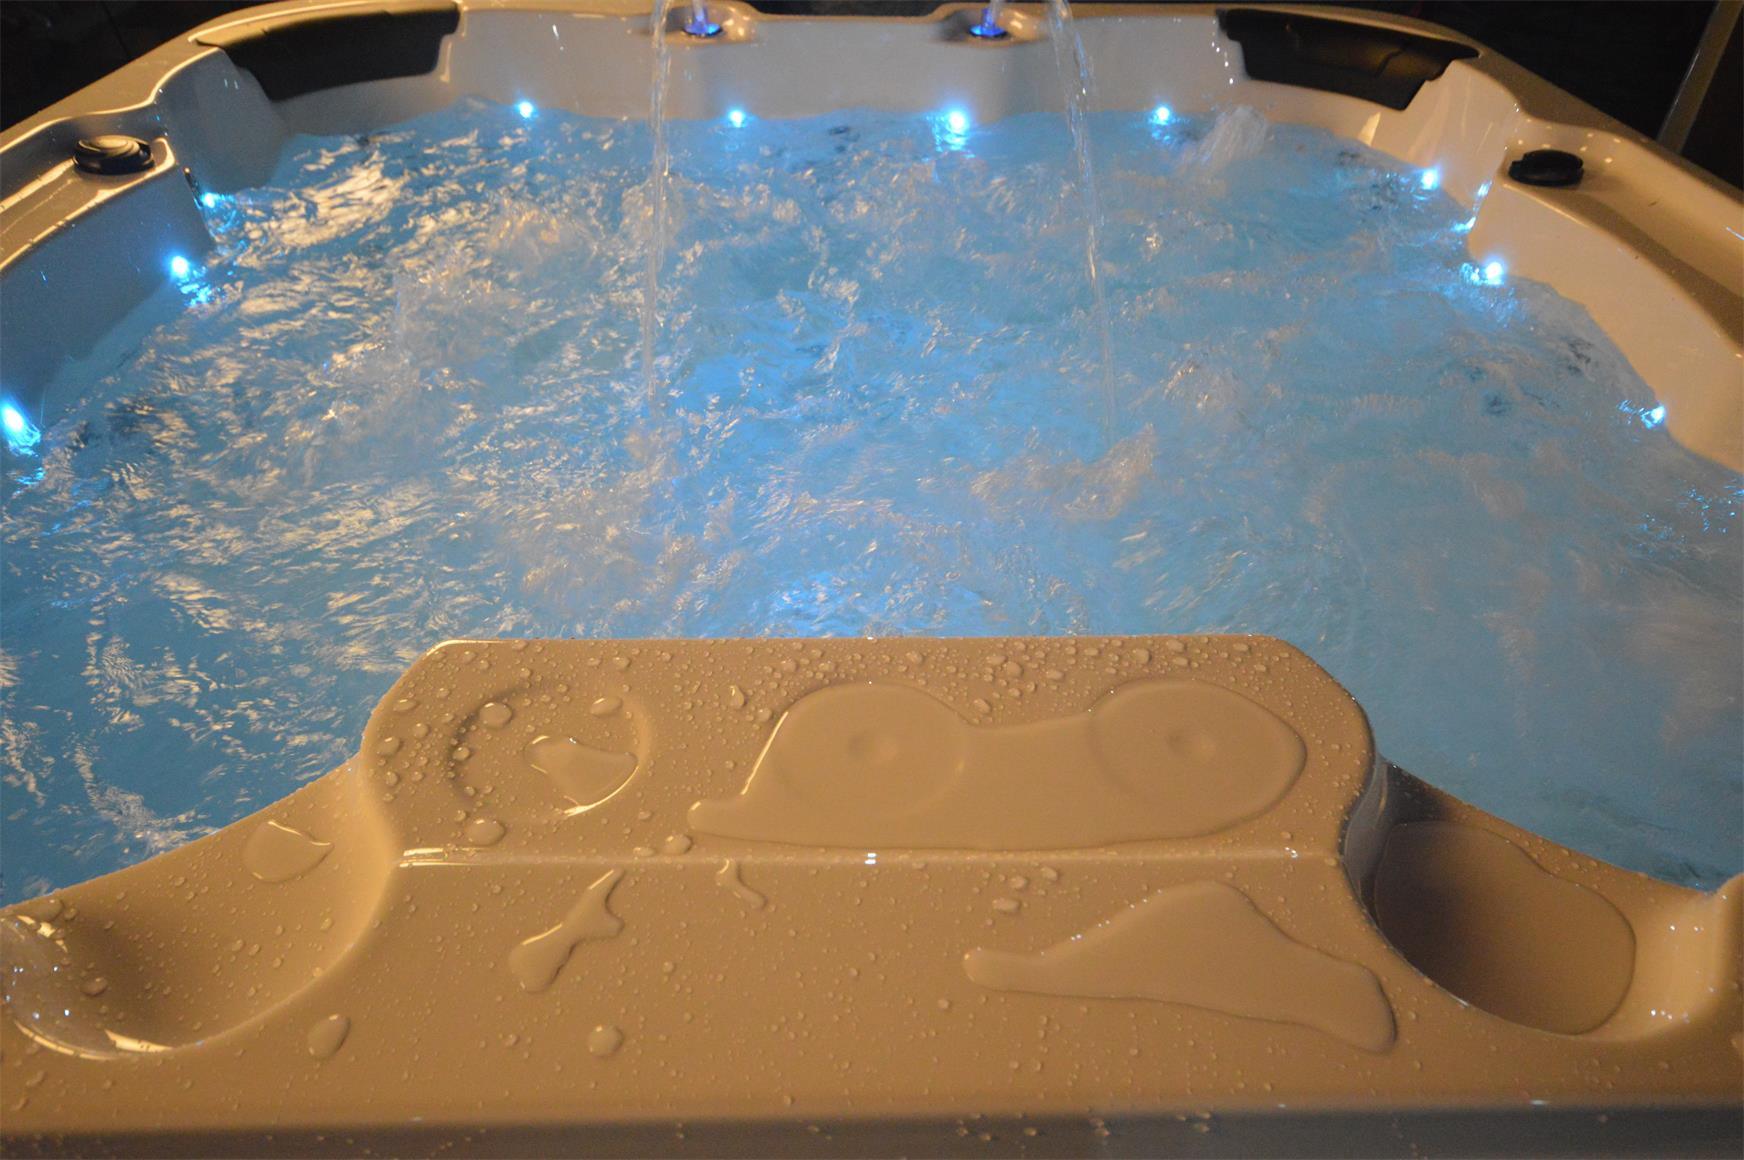 Whirlpool Outdoor Hot Tub Spa Pool HENRI weiß-hellgrau - bm raumkonzept